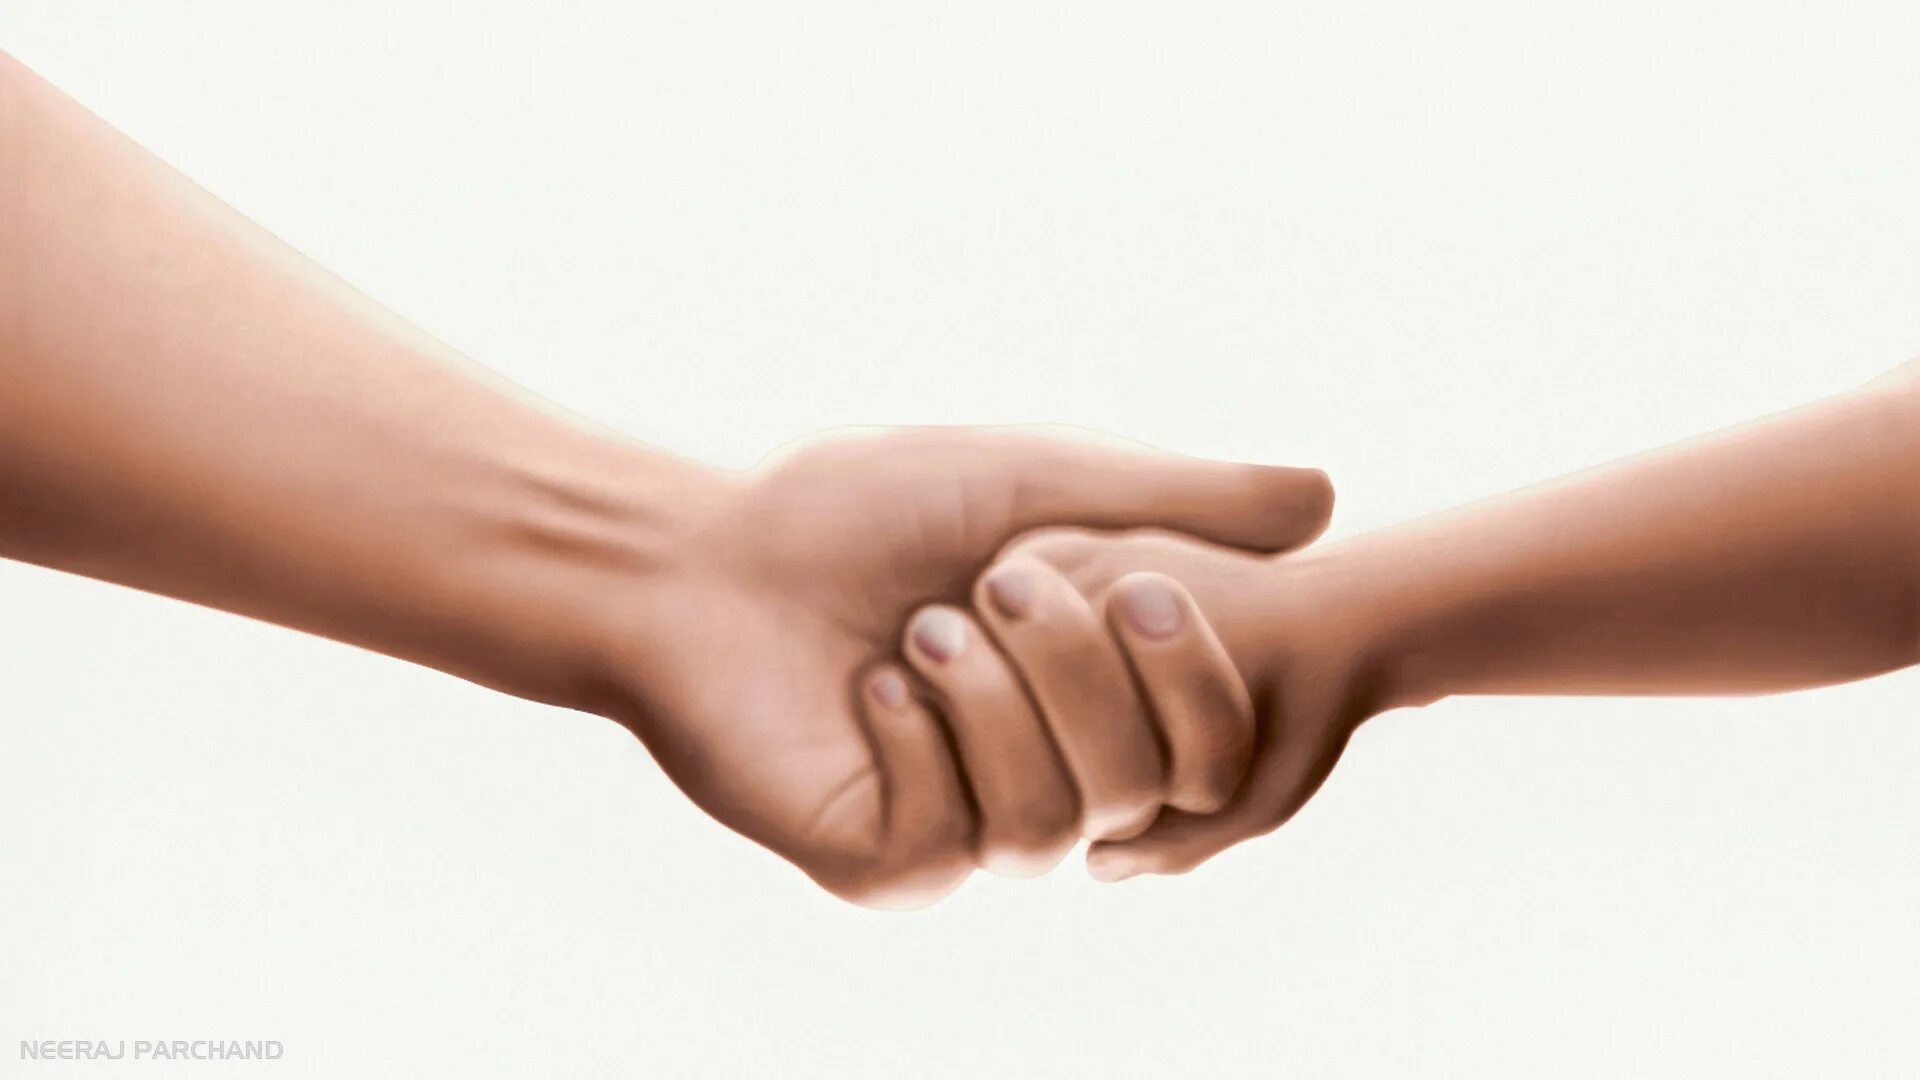 Нокиа руки. Логотип нокиа руки. Нокия картинка руки. Заставка нокиа руки. Connection people